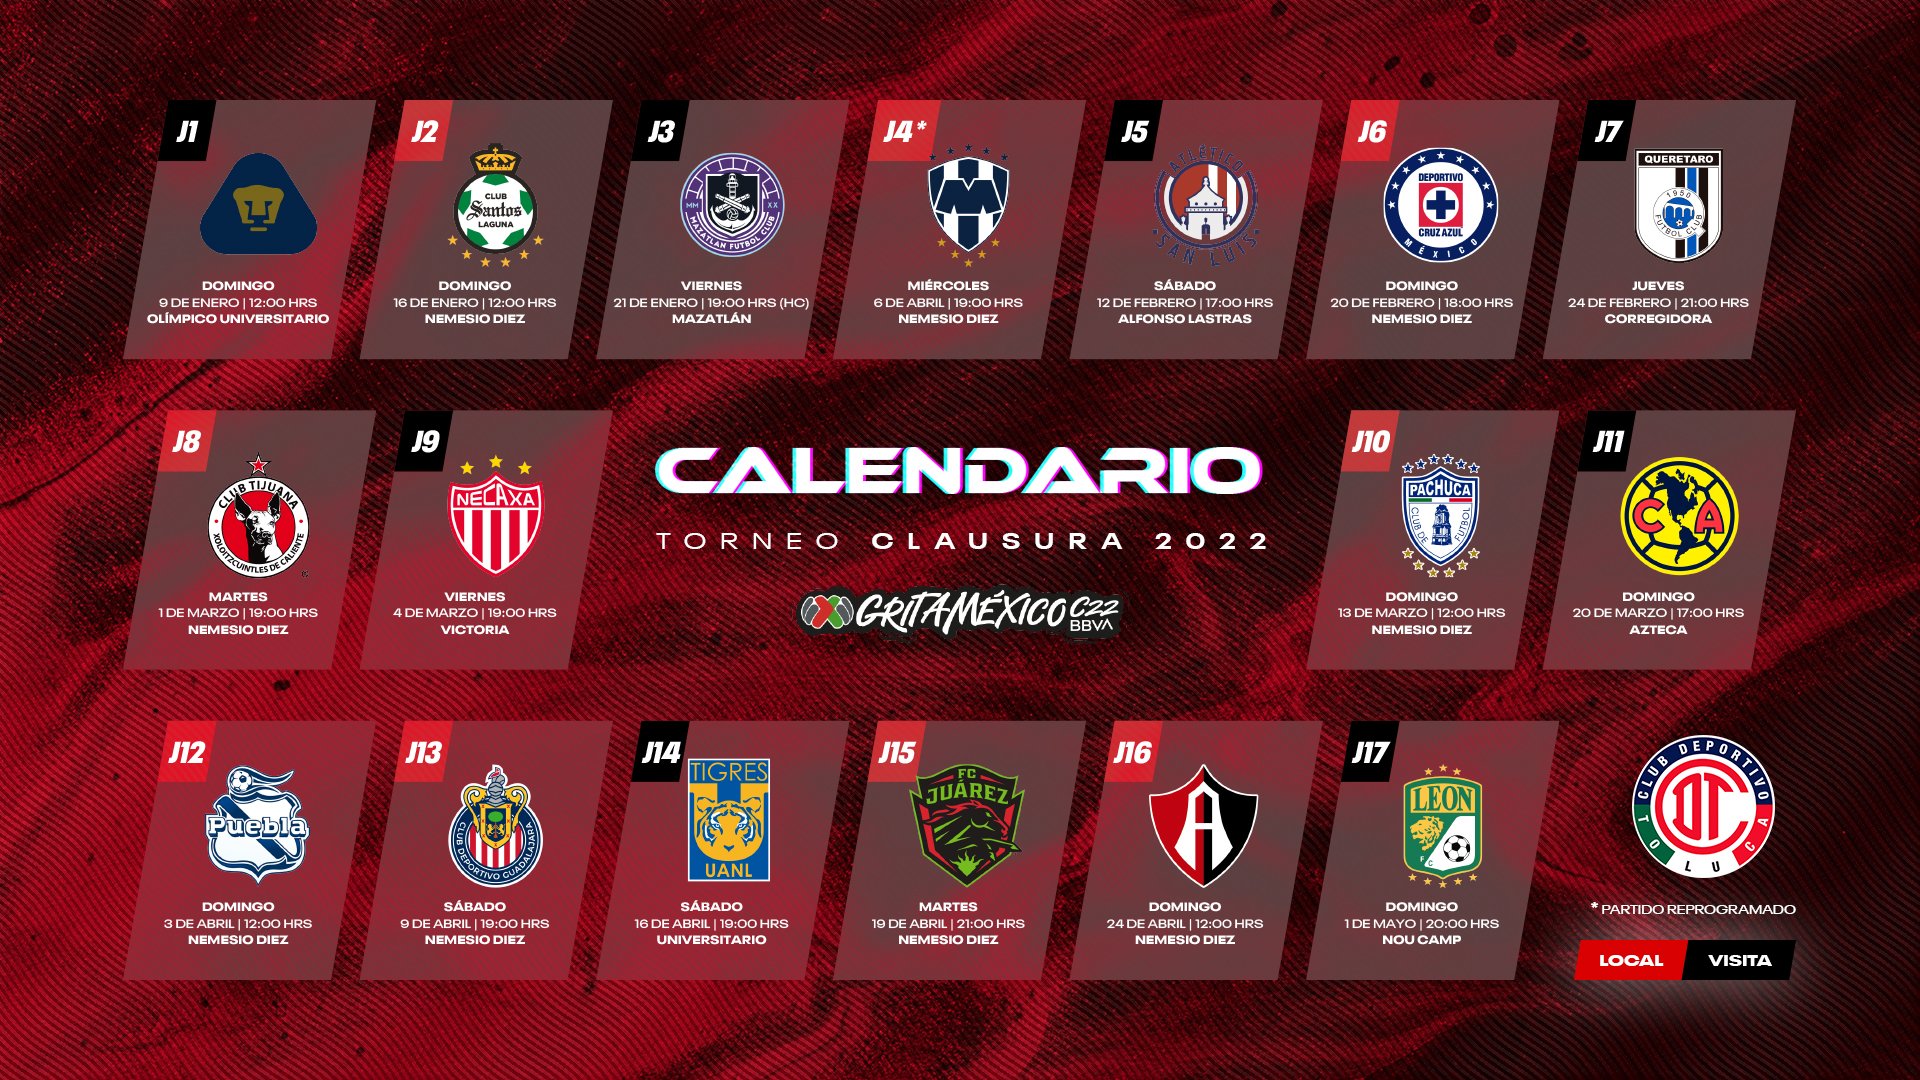 Toluca FC on Twitter: 